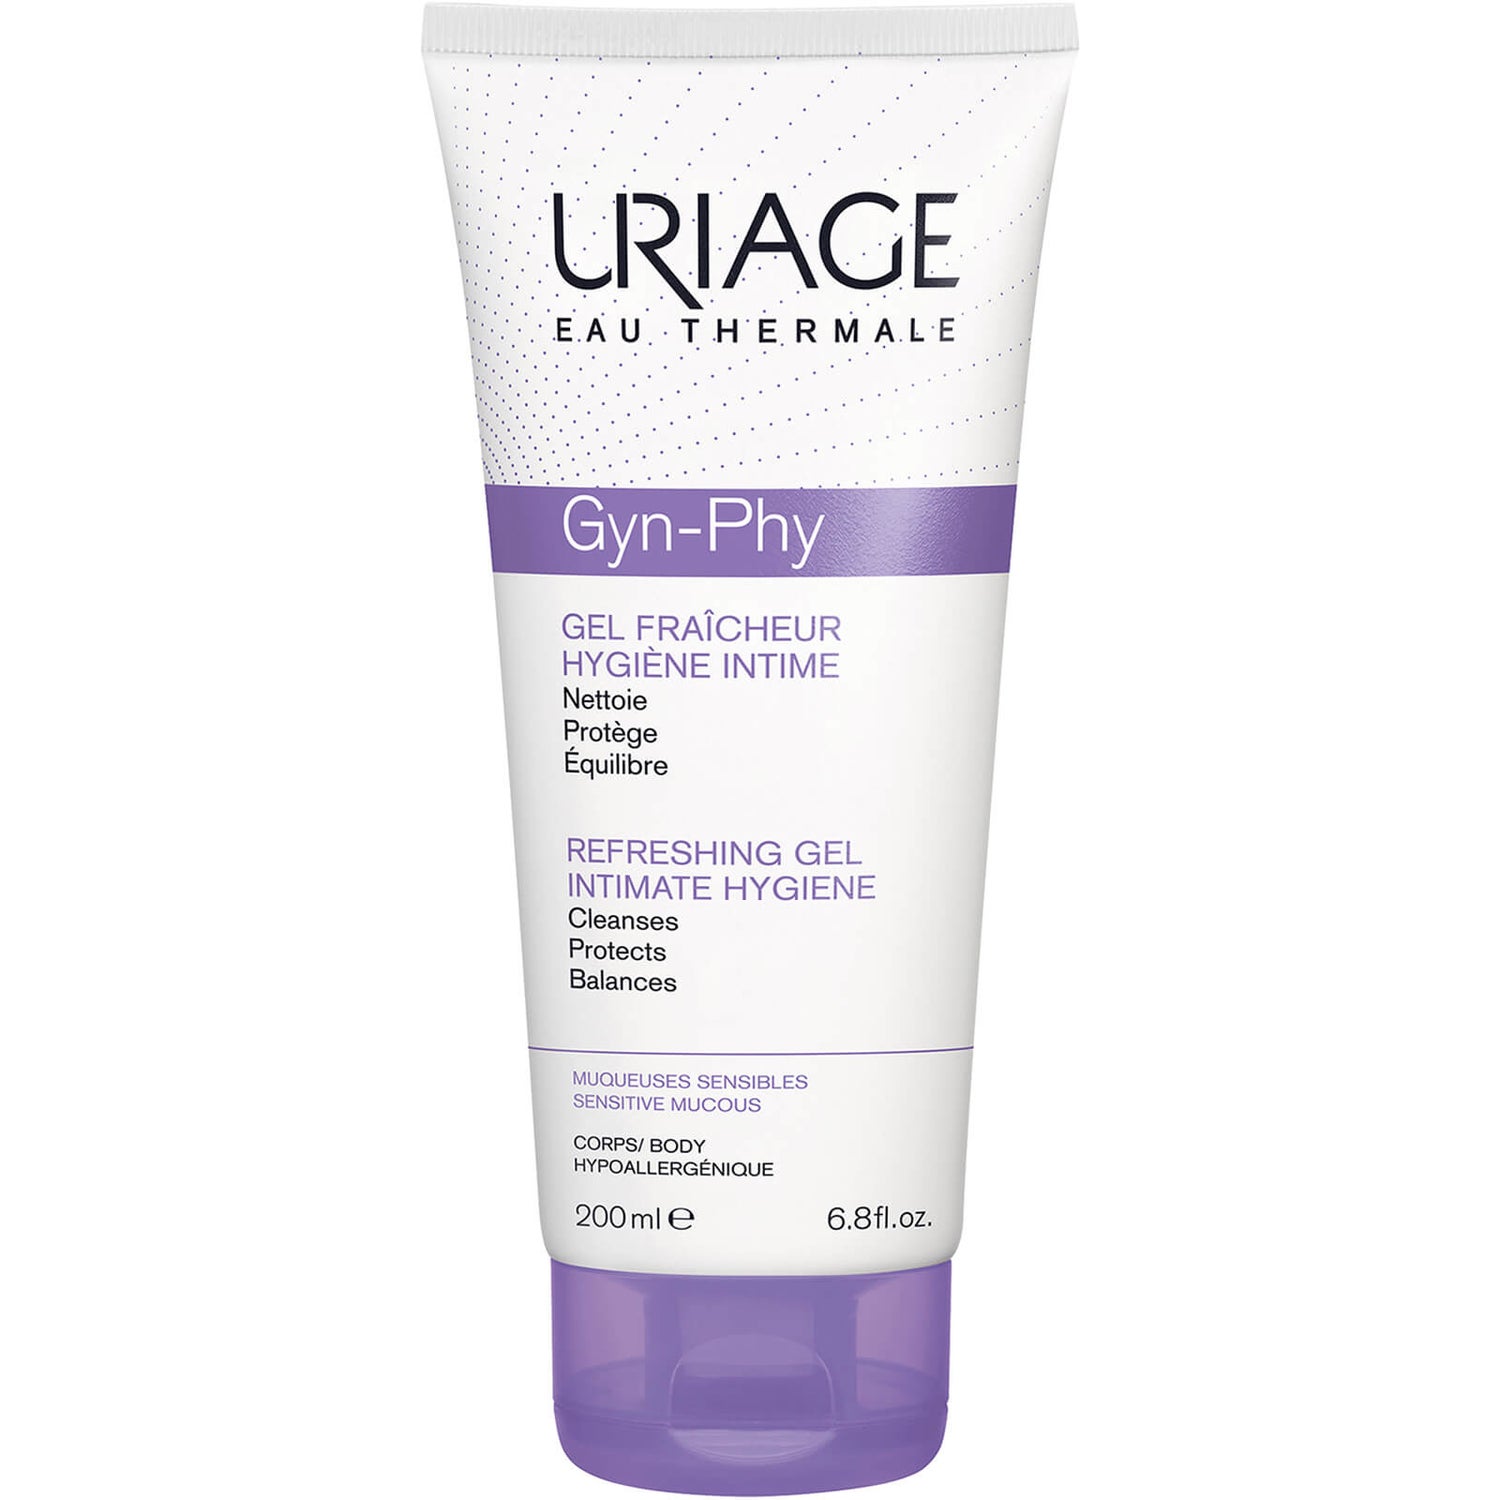 Gel nettoyant hygiène intime quotidienne Uriage Gyn-Phy (200ml)